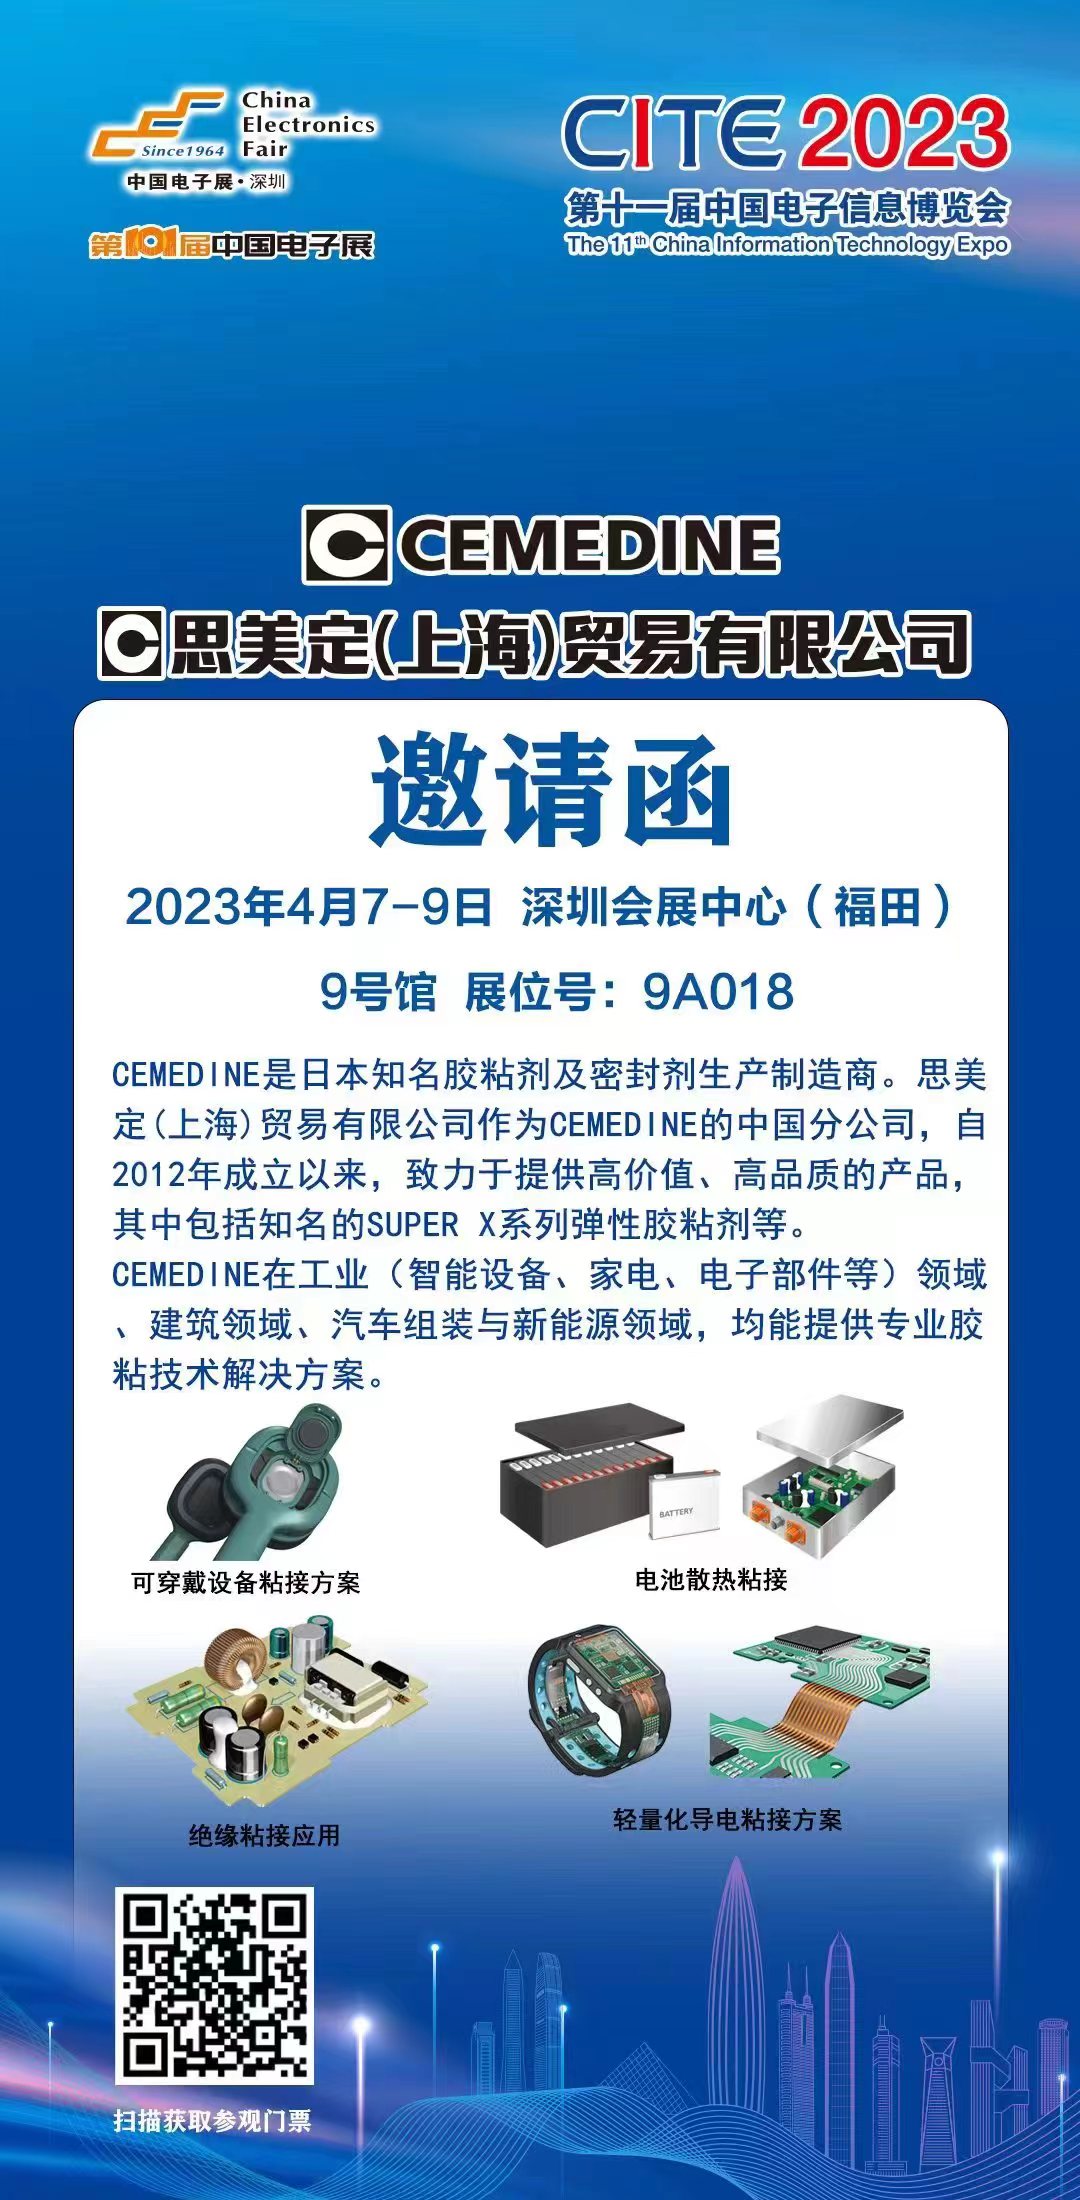 【出展预告】2023.04.07~04.09 思美定将出展CITE2023第十一届中国电子信息博览会